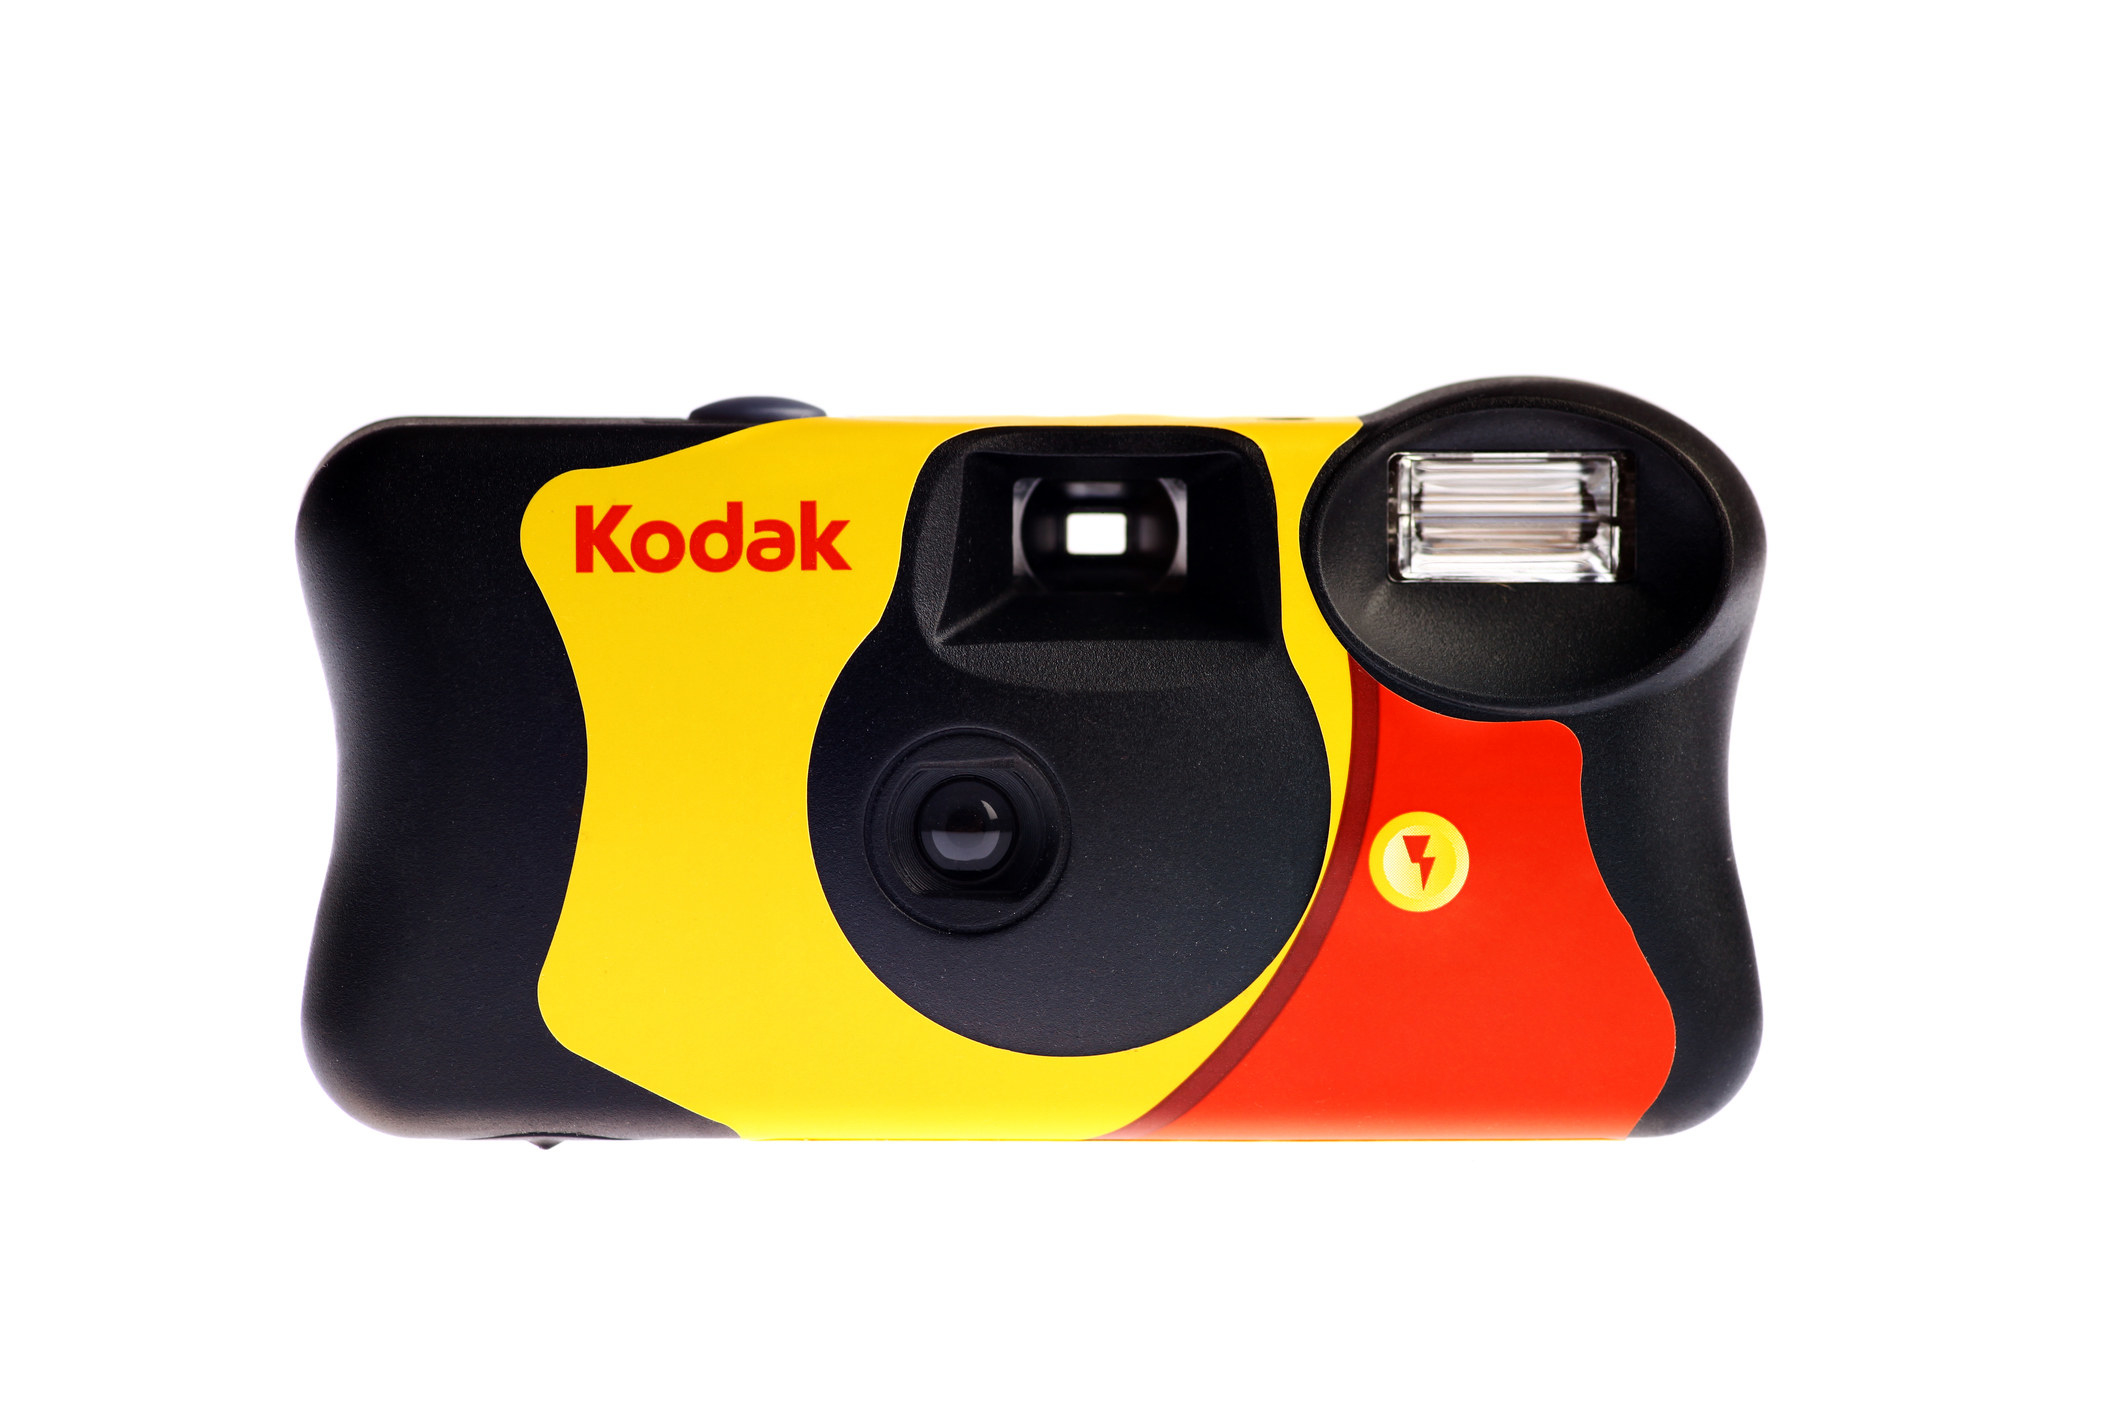 A disposable camera